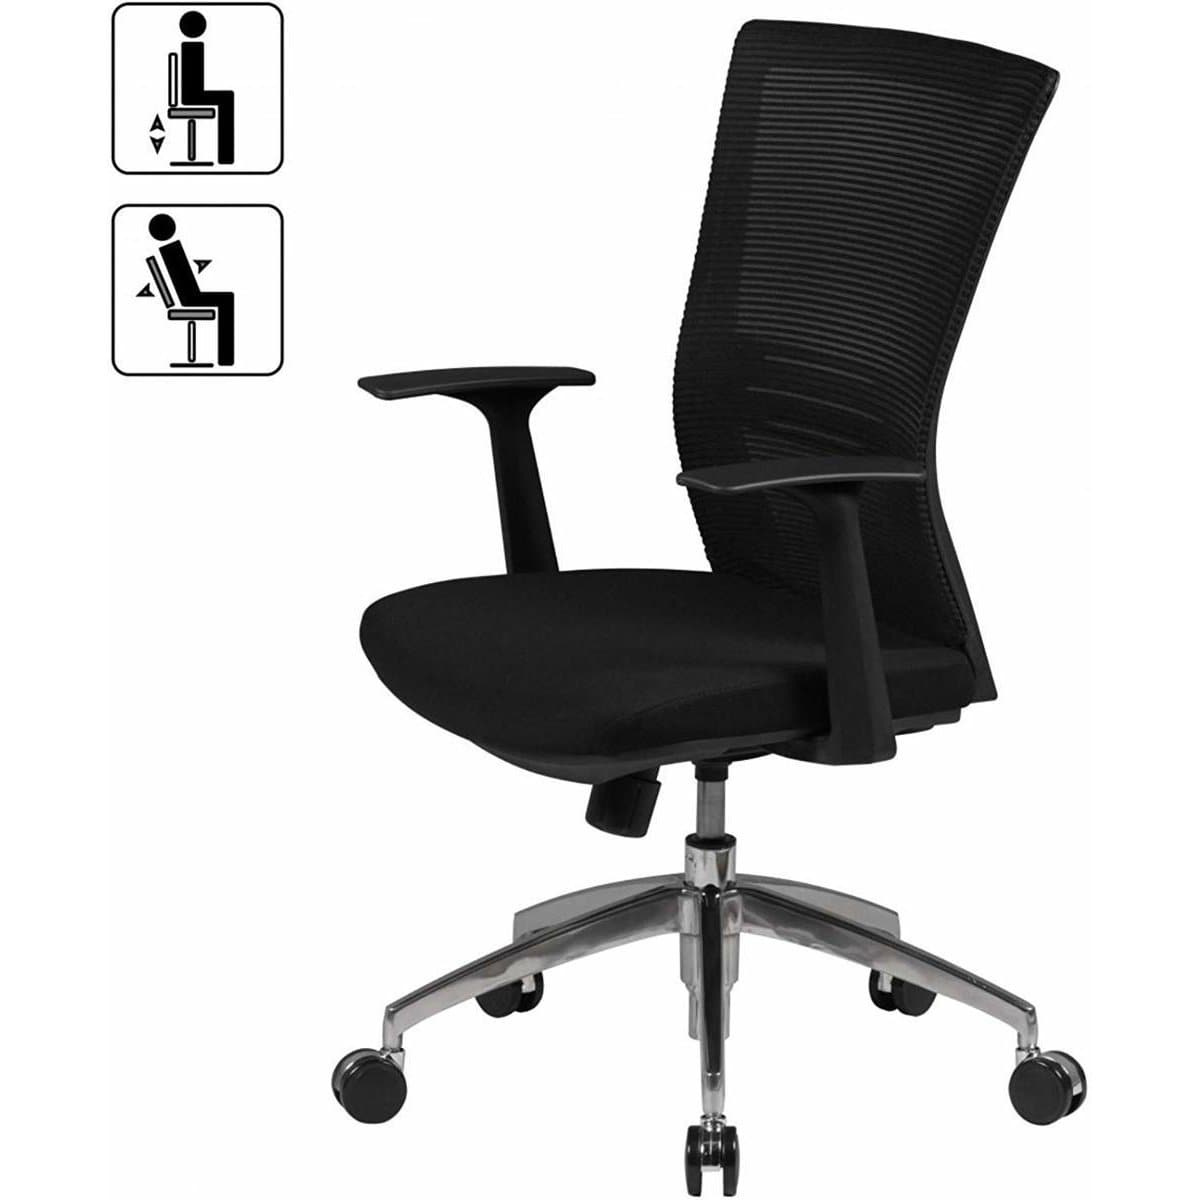 Chaise de bureau Claremont de Nancy - Chaise de bureau ergonomique - Chaises de bureau pour adultes